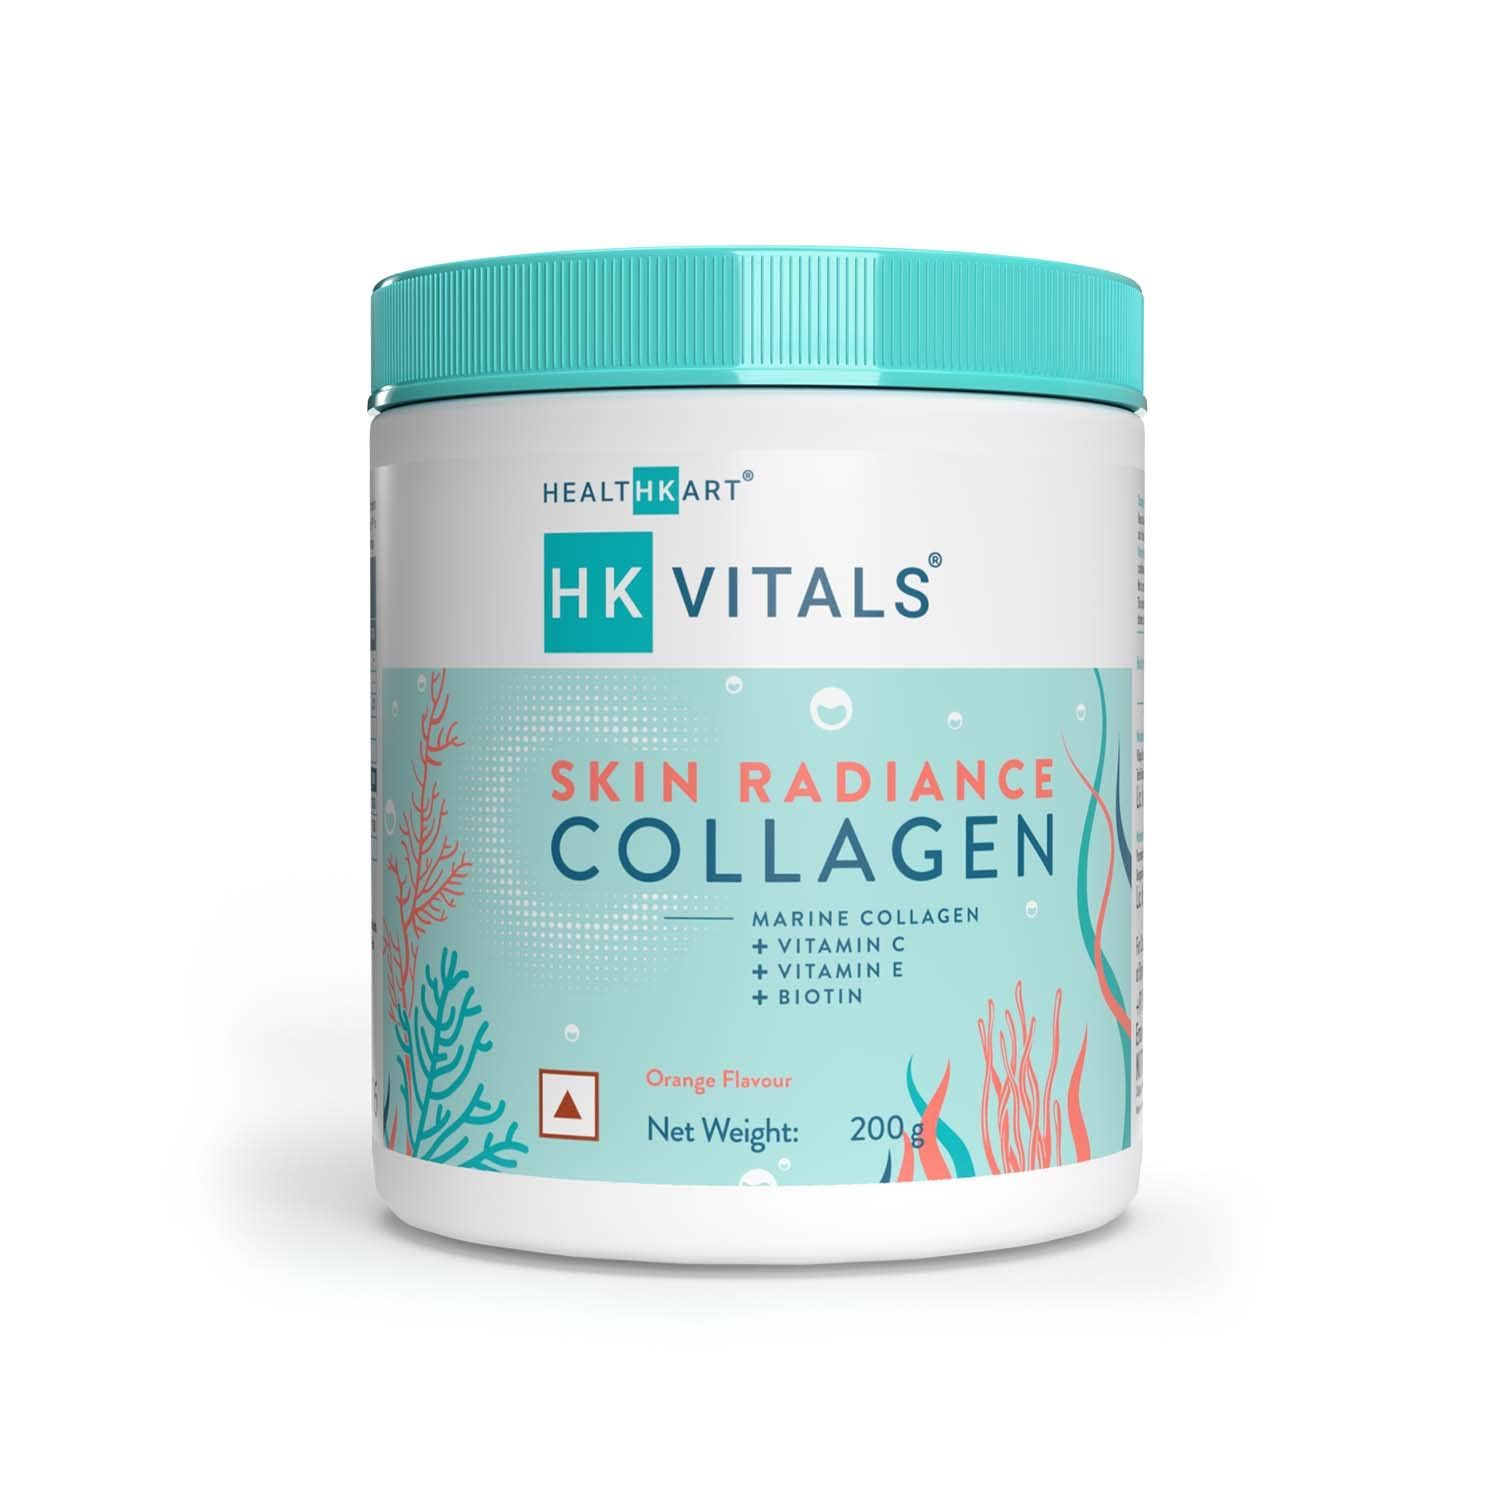 HK Vitals Skin Radiance Collagen Image